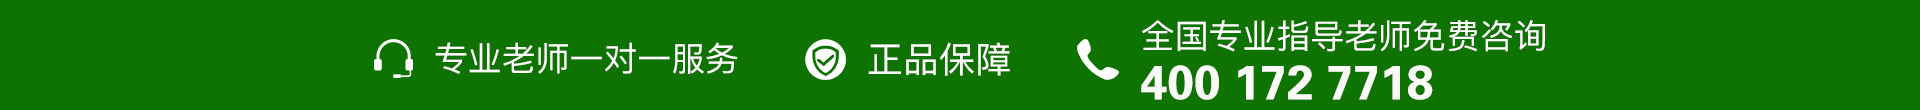 绿色电话-banner图下方-PC - 副本.jpg